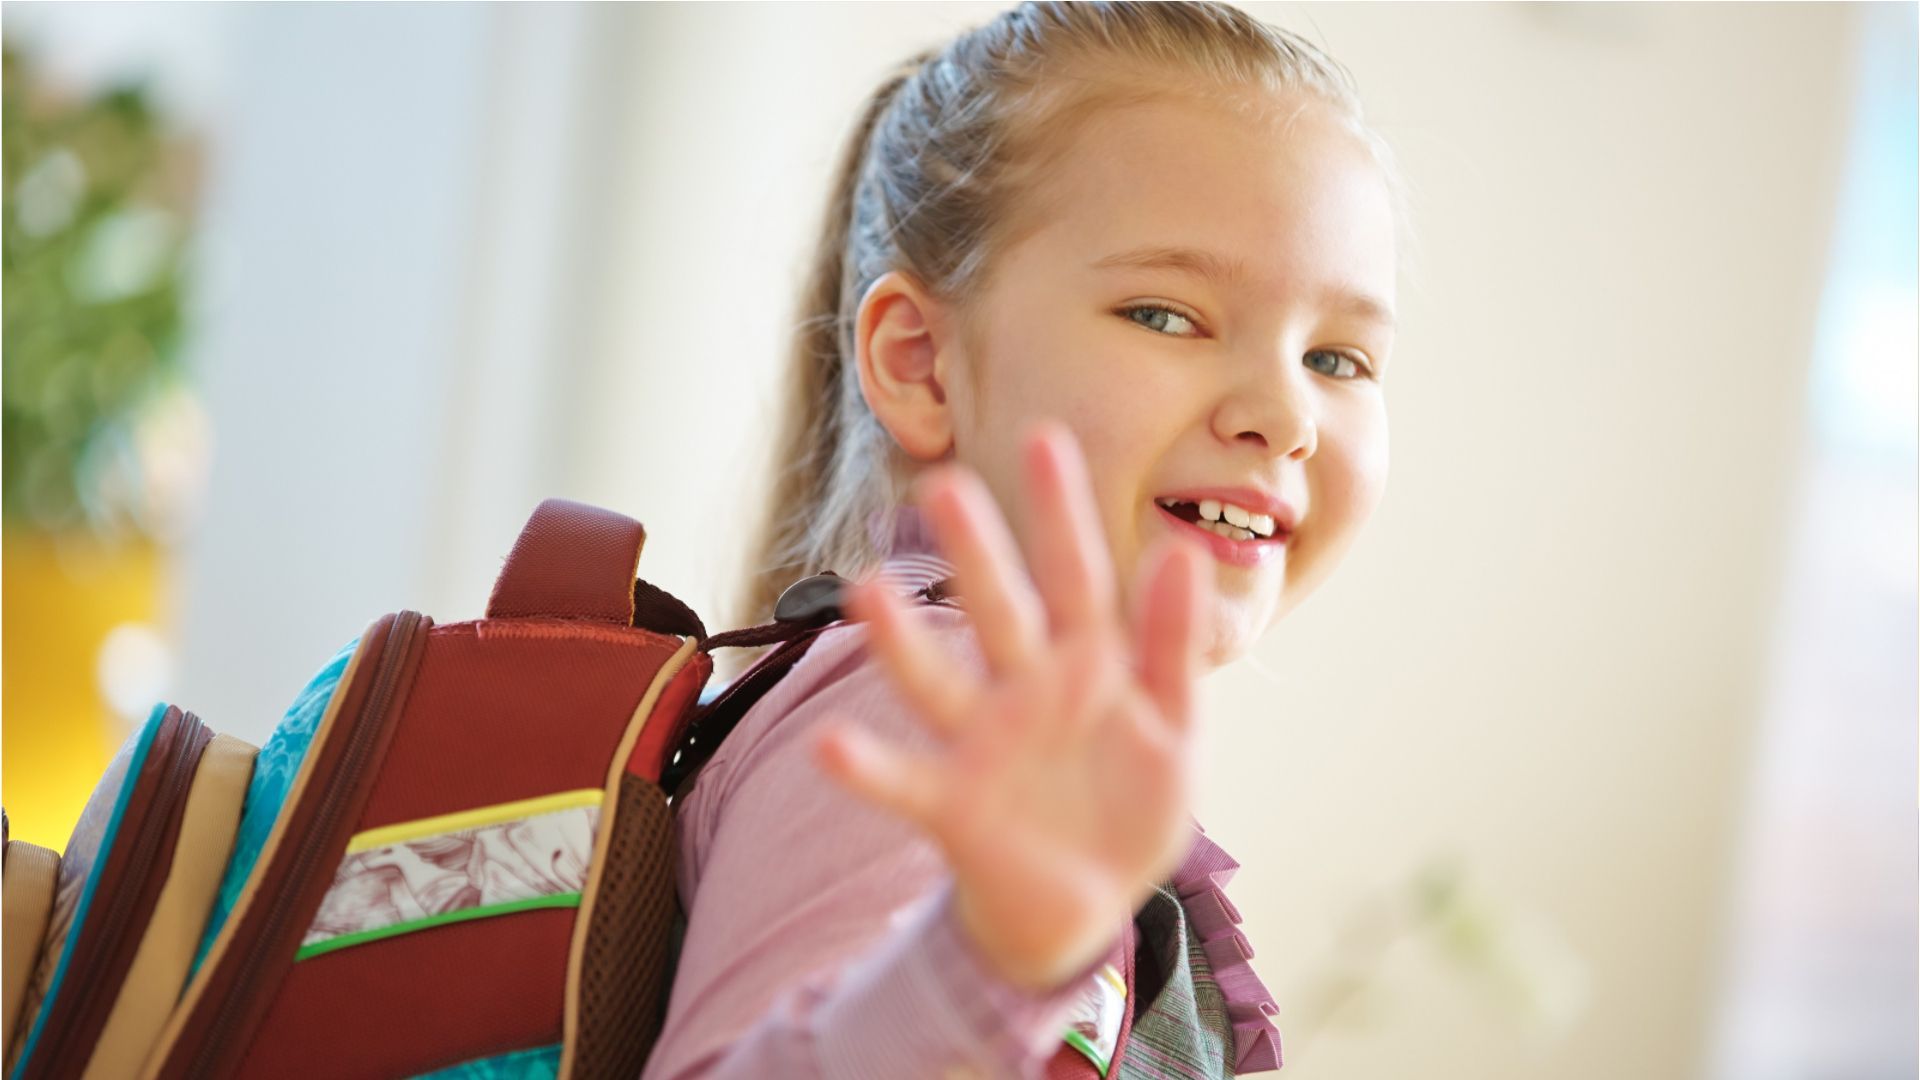 Gefahren auf dem Schulweg vermeiden: 10 Tipps für Eltern und Grundschüler